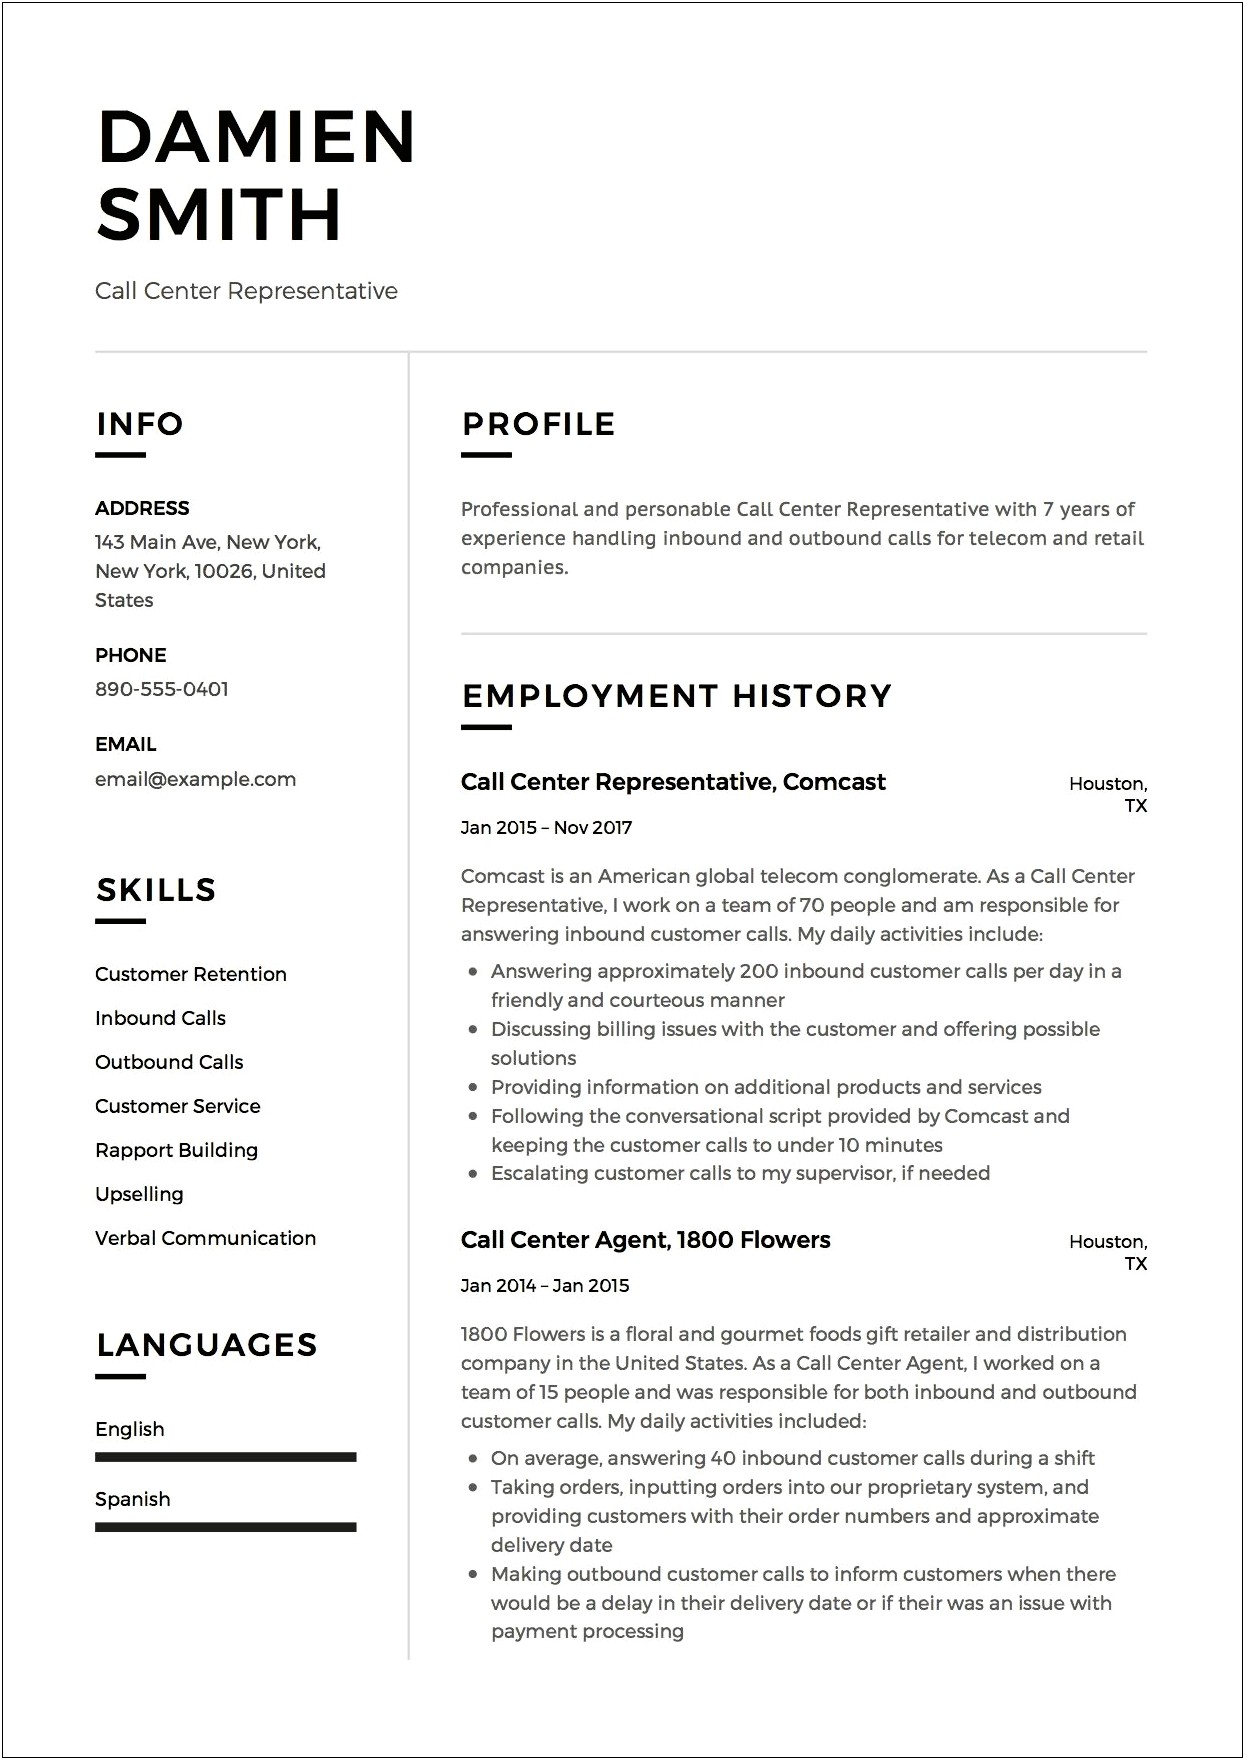 Resume Samples For Call Center Job